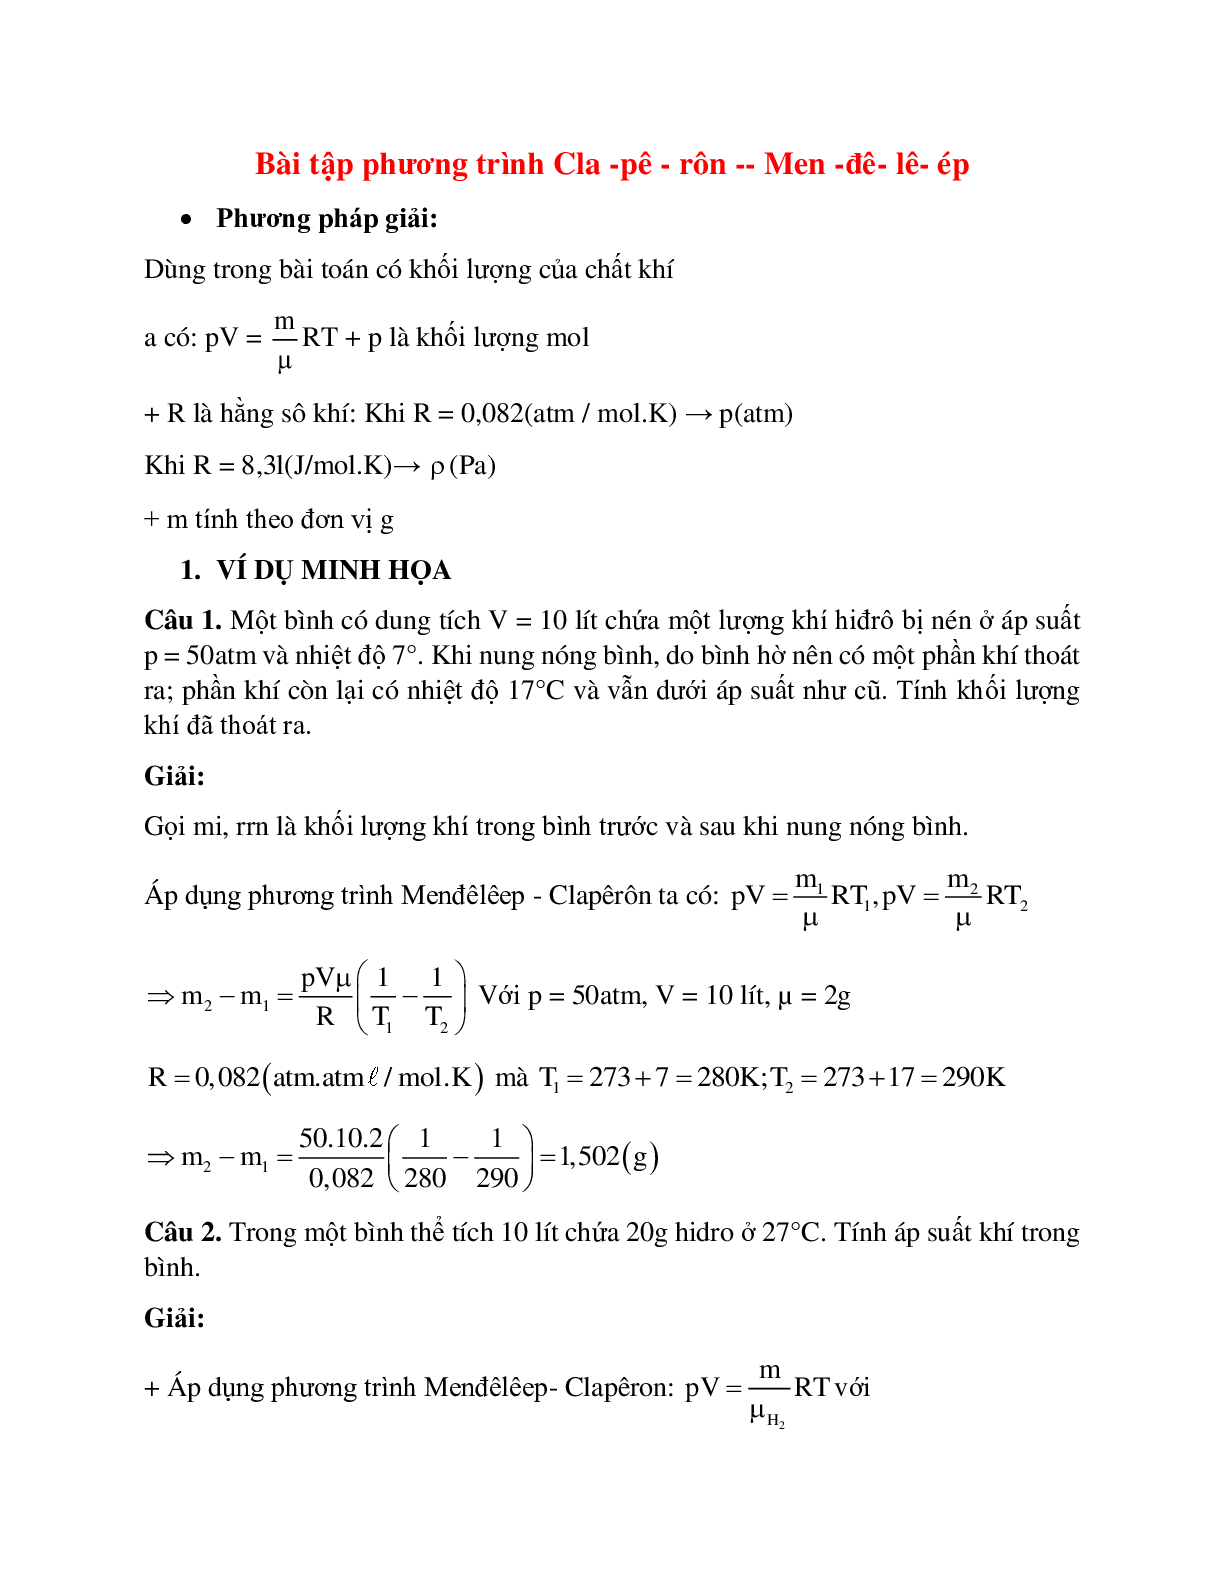 Bài tập về phương trình Cla-pê-rôn Men-đê-lê-ép chọn lọc (trang 1)